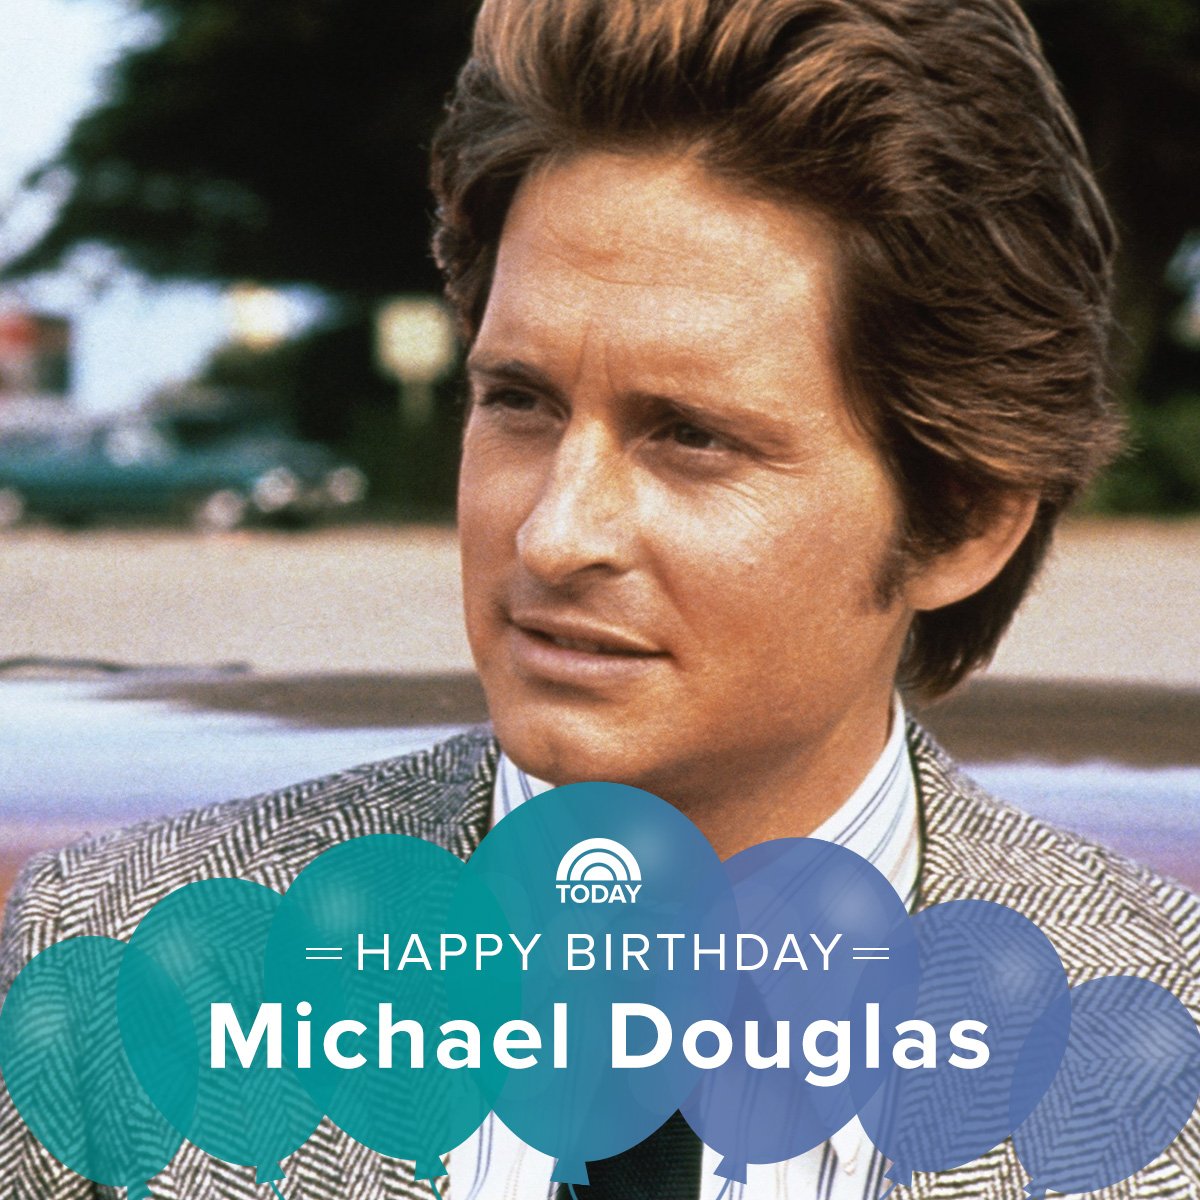 Happy birthday, Michael Douglas! 